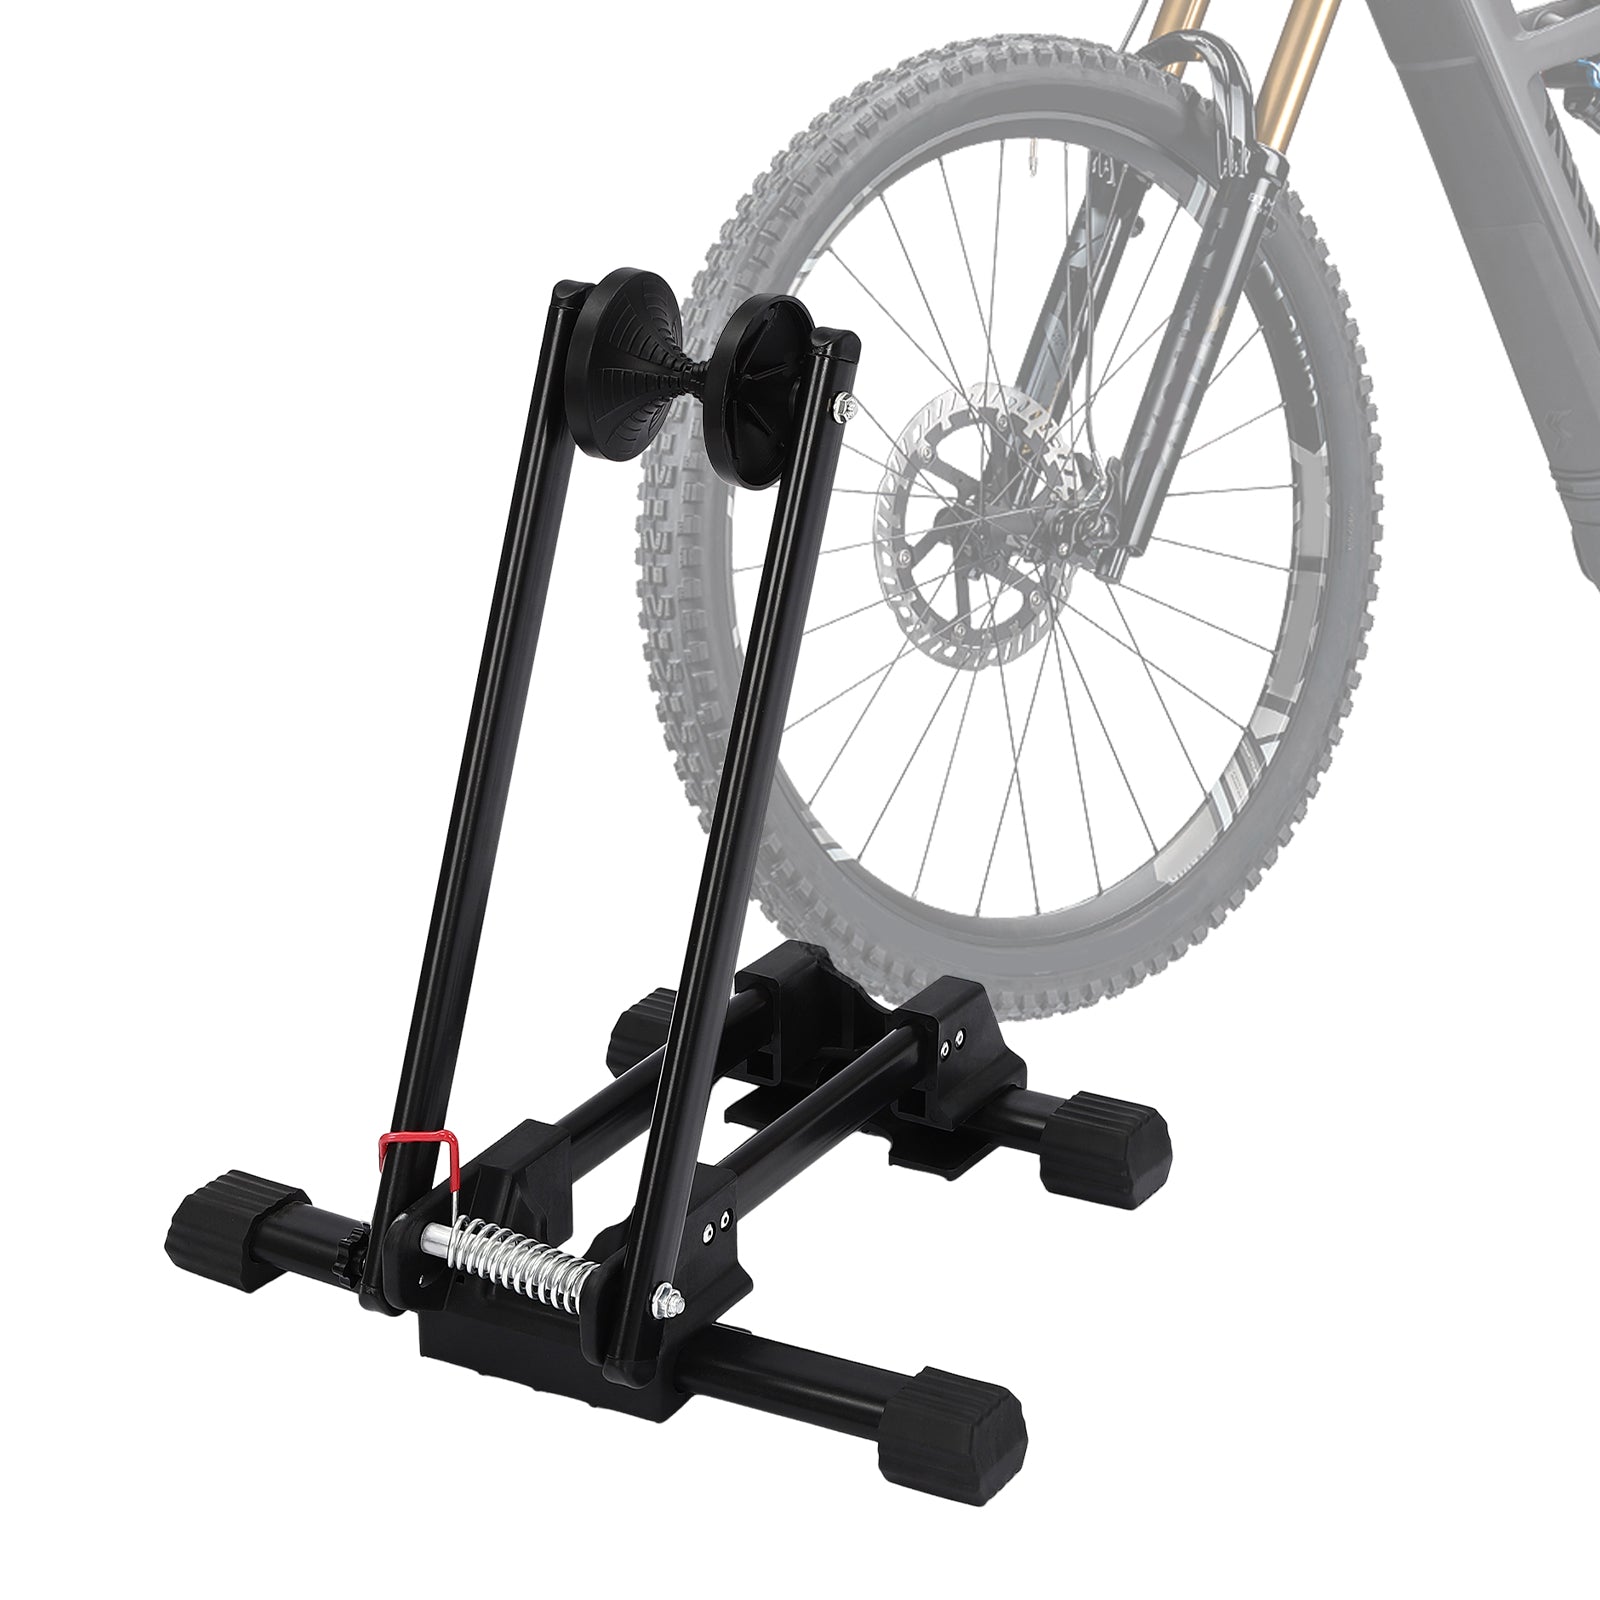 Supporto di centraggio per bicicletta, per mountain bike, bici da corsa, ruote da 16-29", montaggio semplice senza attrezzi